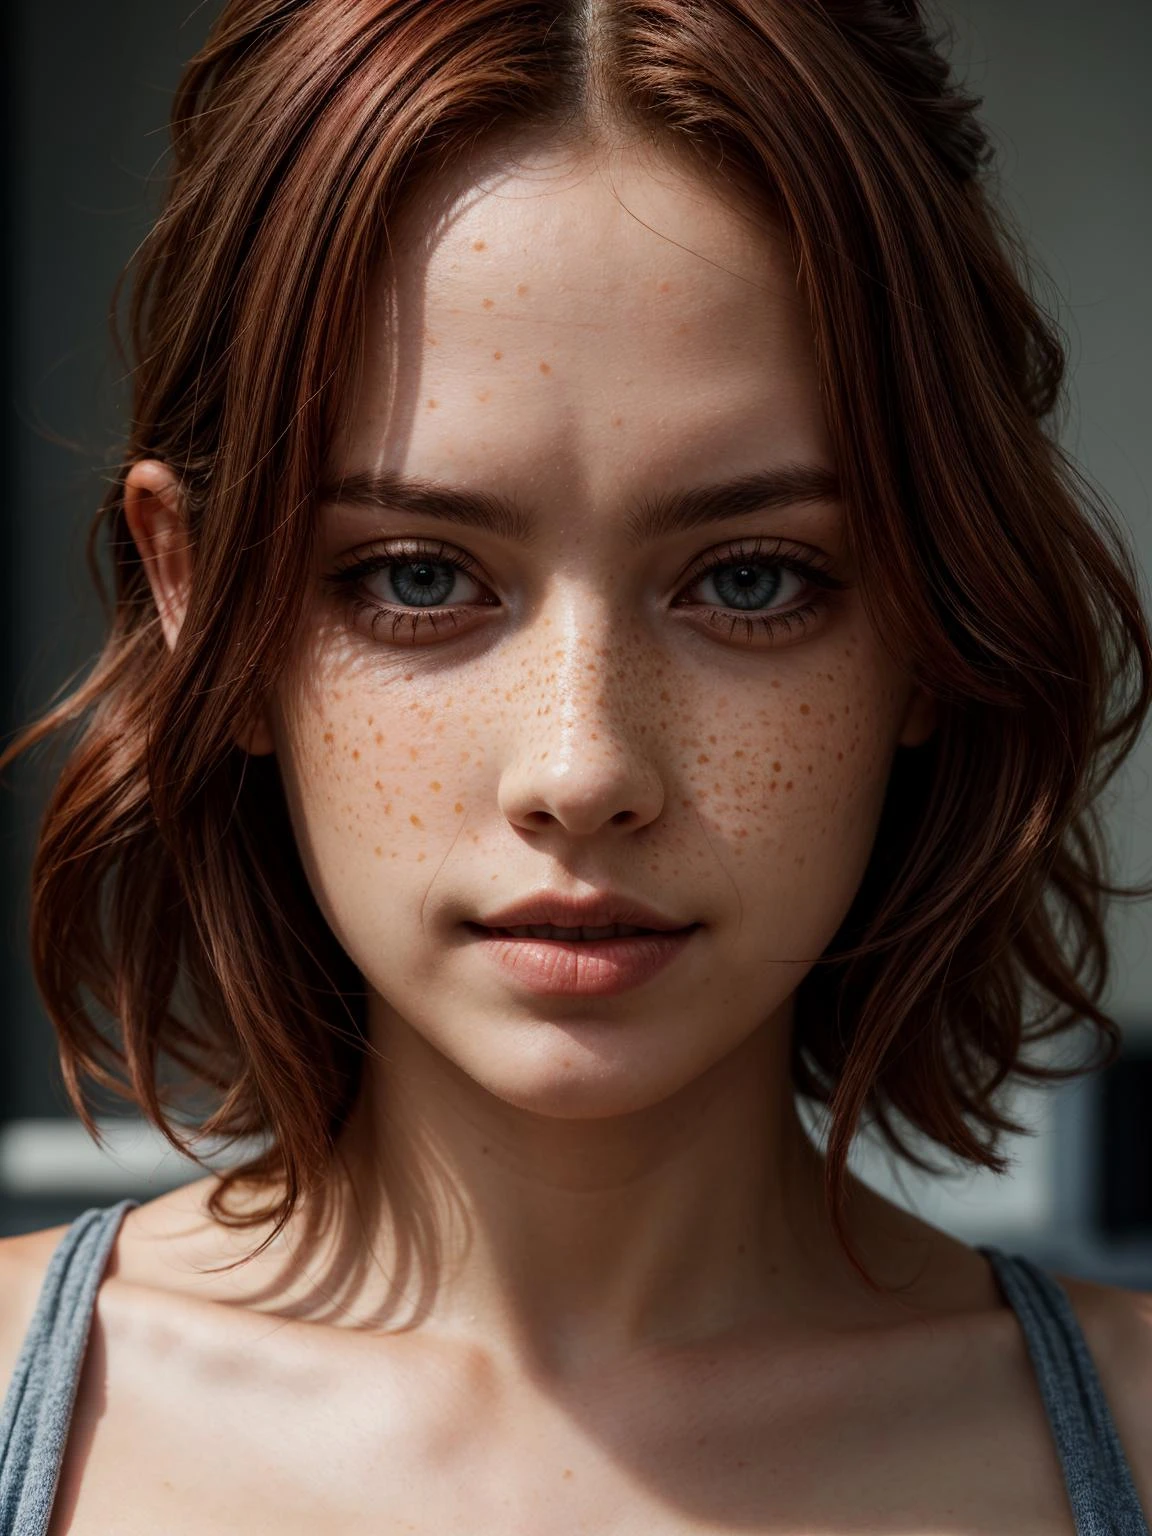 一位红头发女人的照片, 雀斑, 蓝眼睛, 
杰作, 极致细节, 详细的, 重点, 杰作, 实际的, photo实际的, 4k, 8千, 16千, 高分辨率